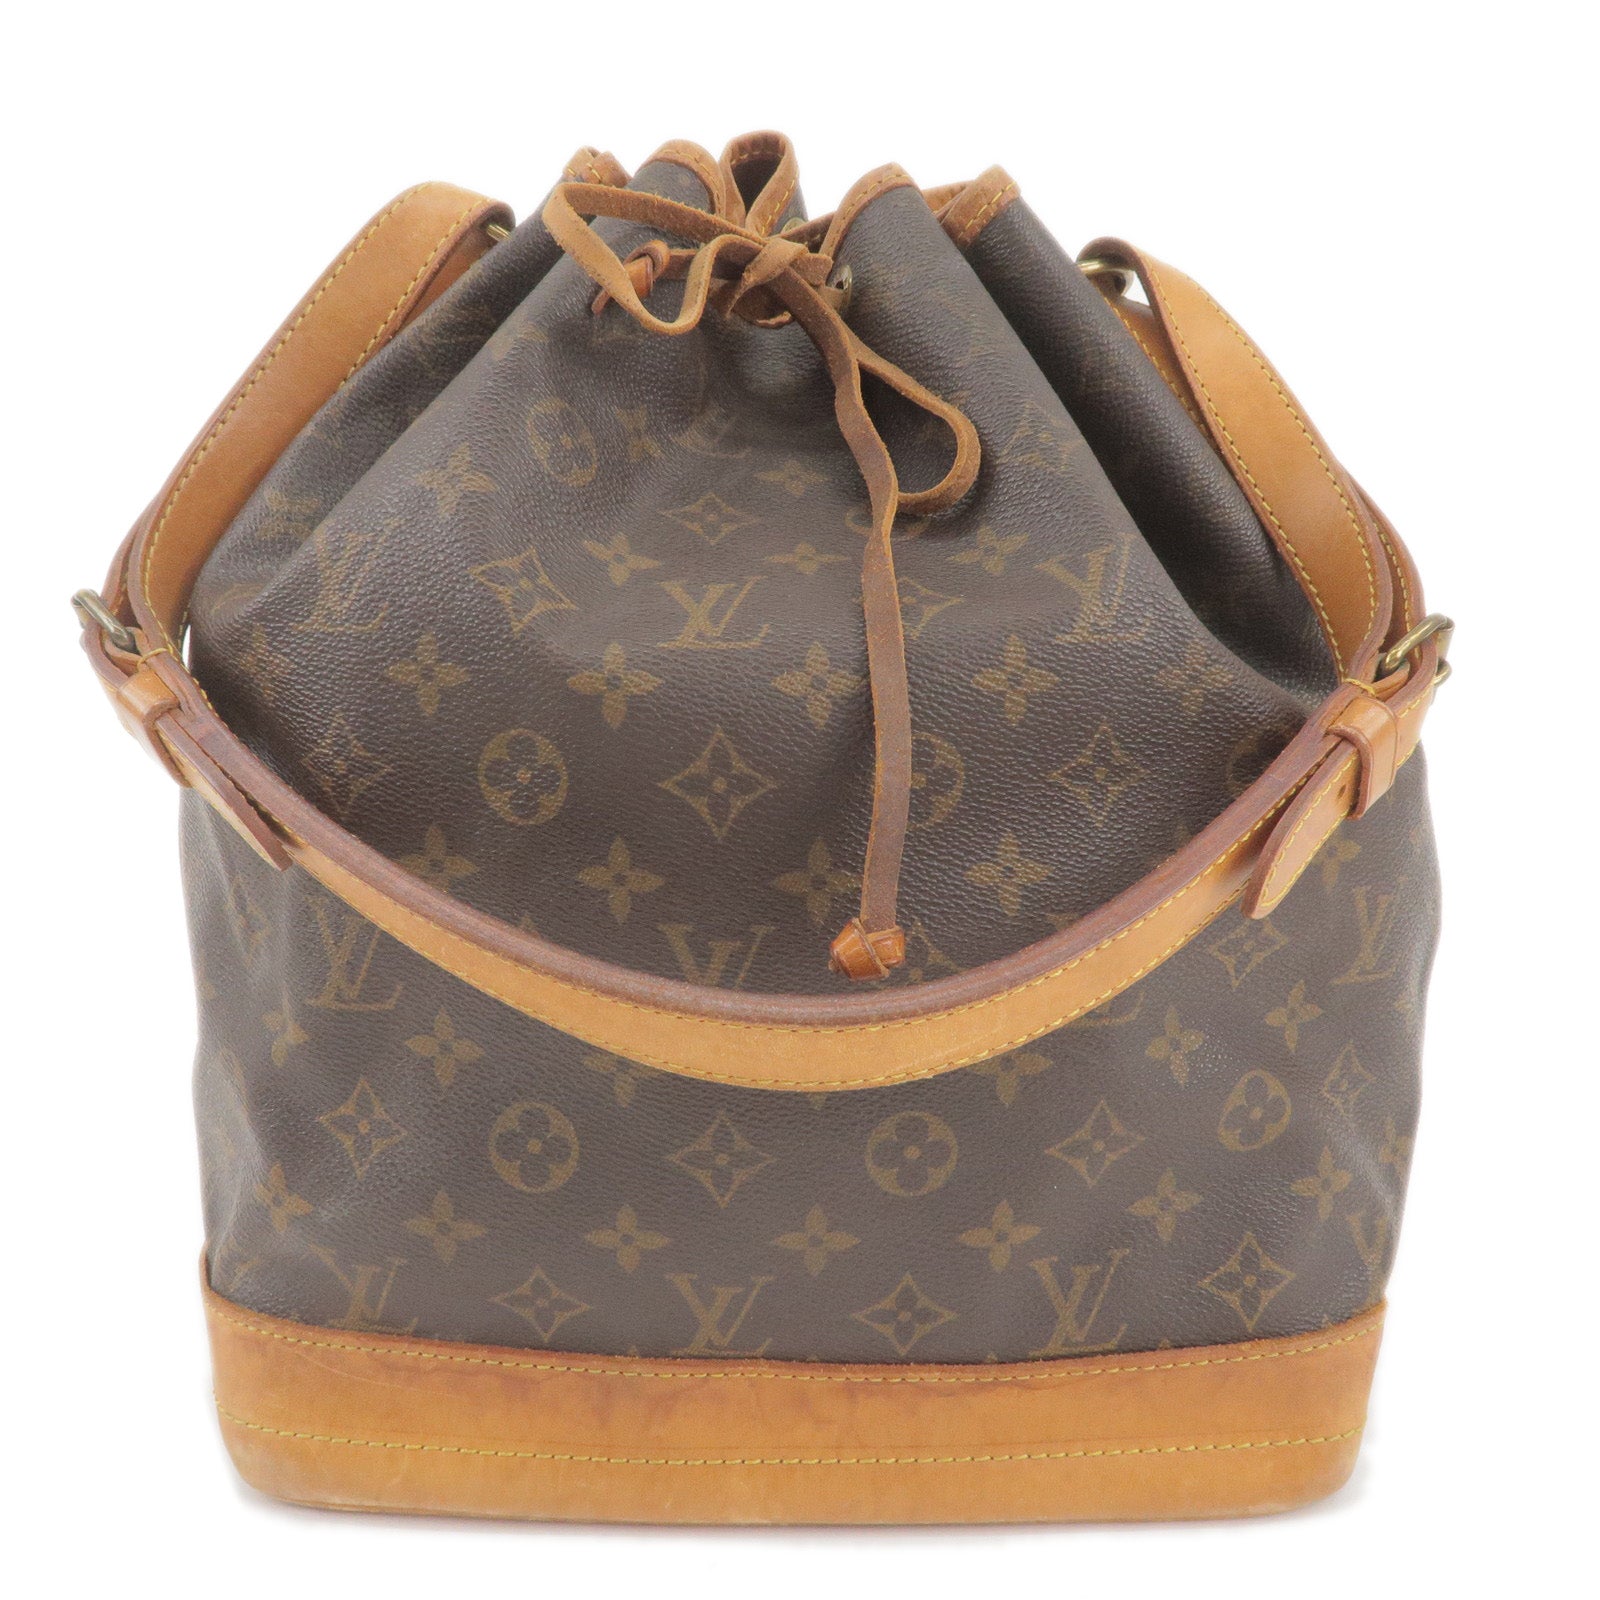 Louis Vuitton e Monogram (pre-owned), Handbags